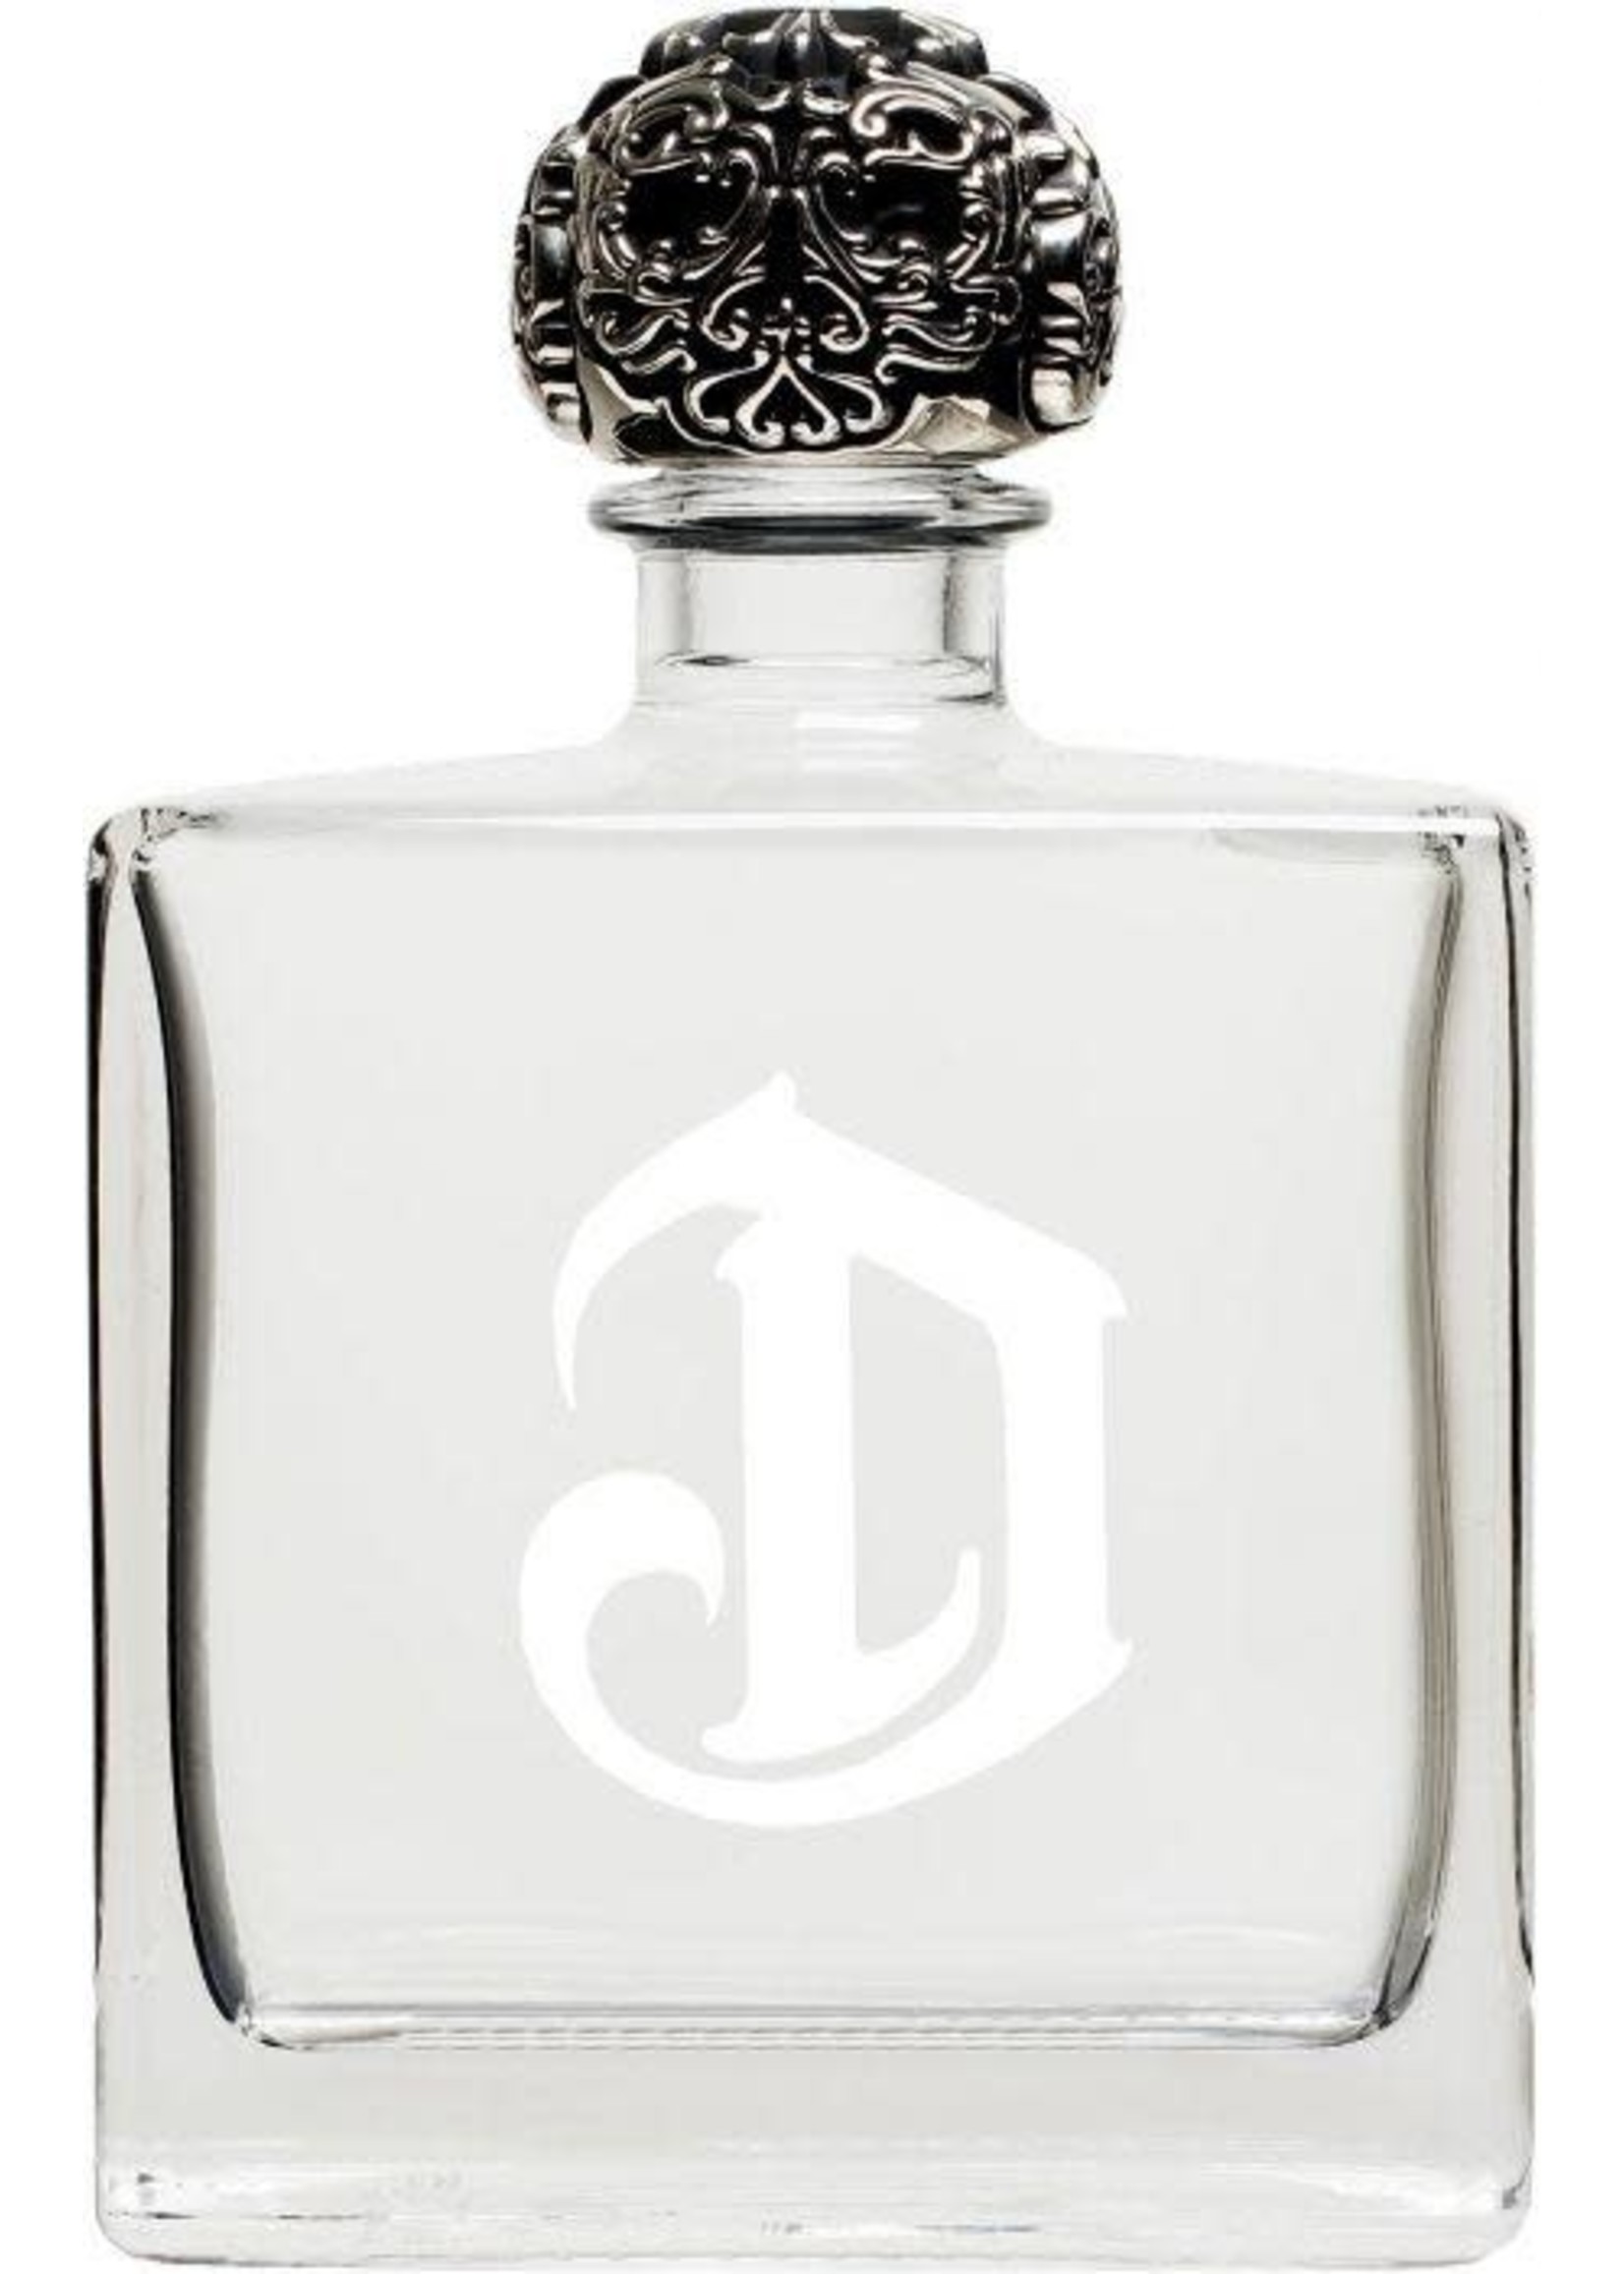 Deleon Deleon / Blanco Tequila 40% abv / 750mL